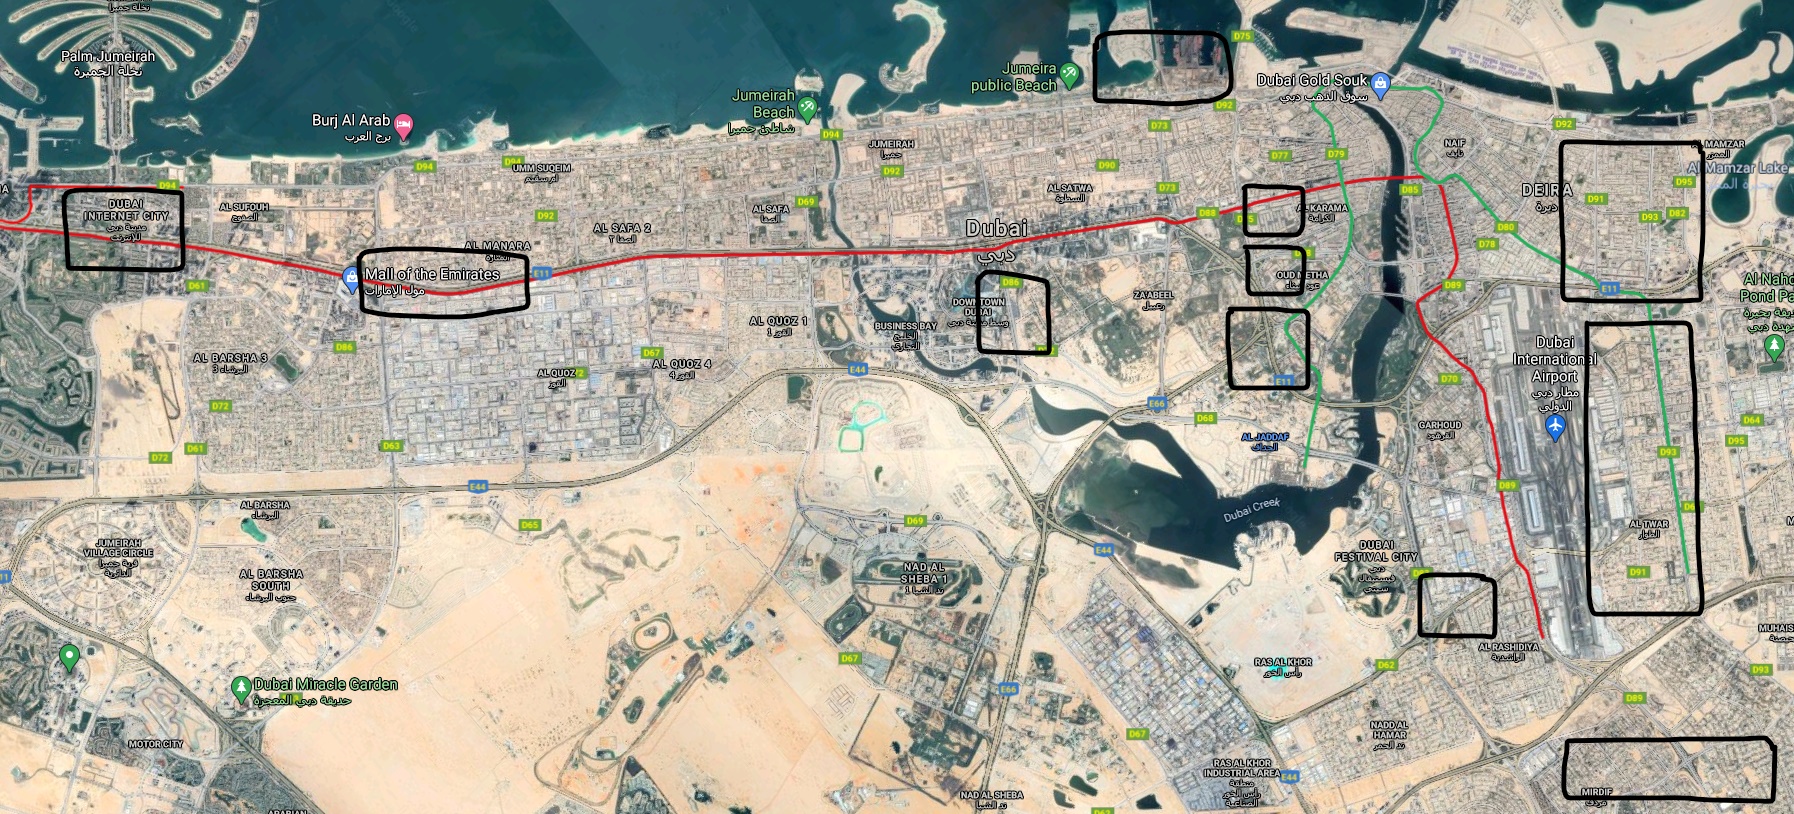 Dubai's Map